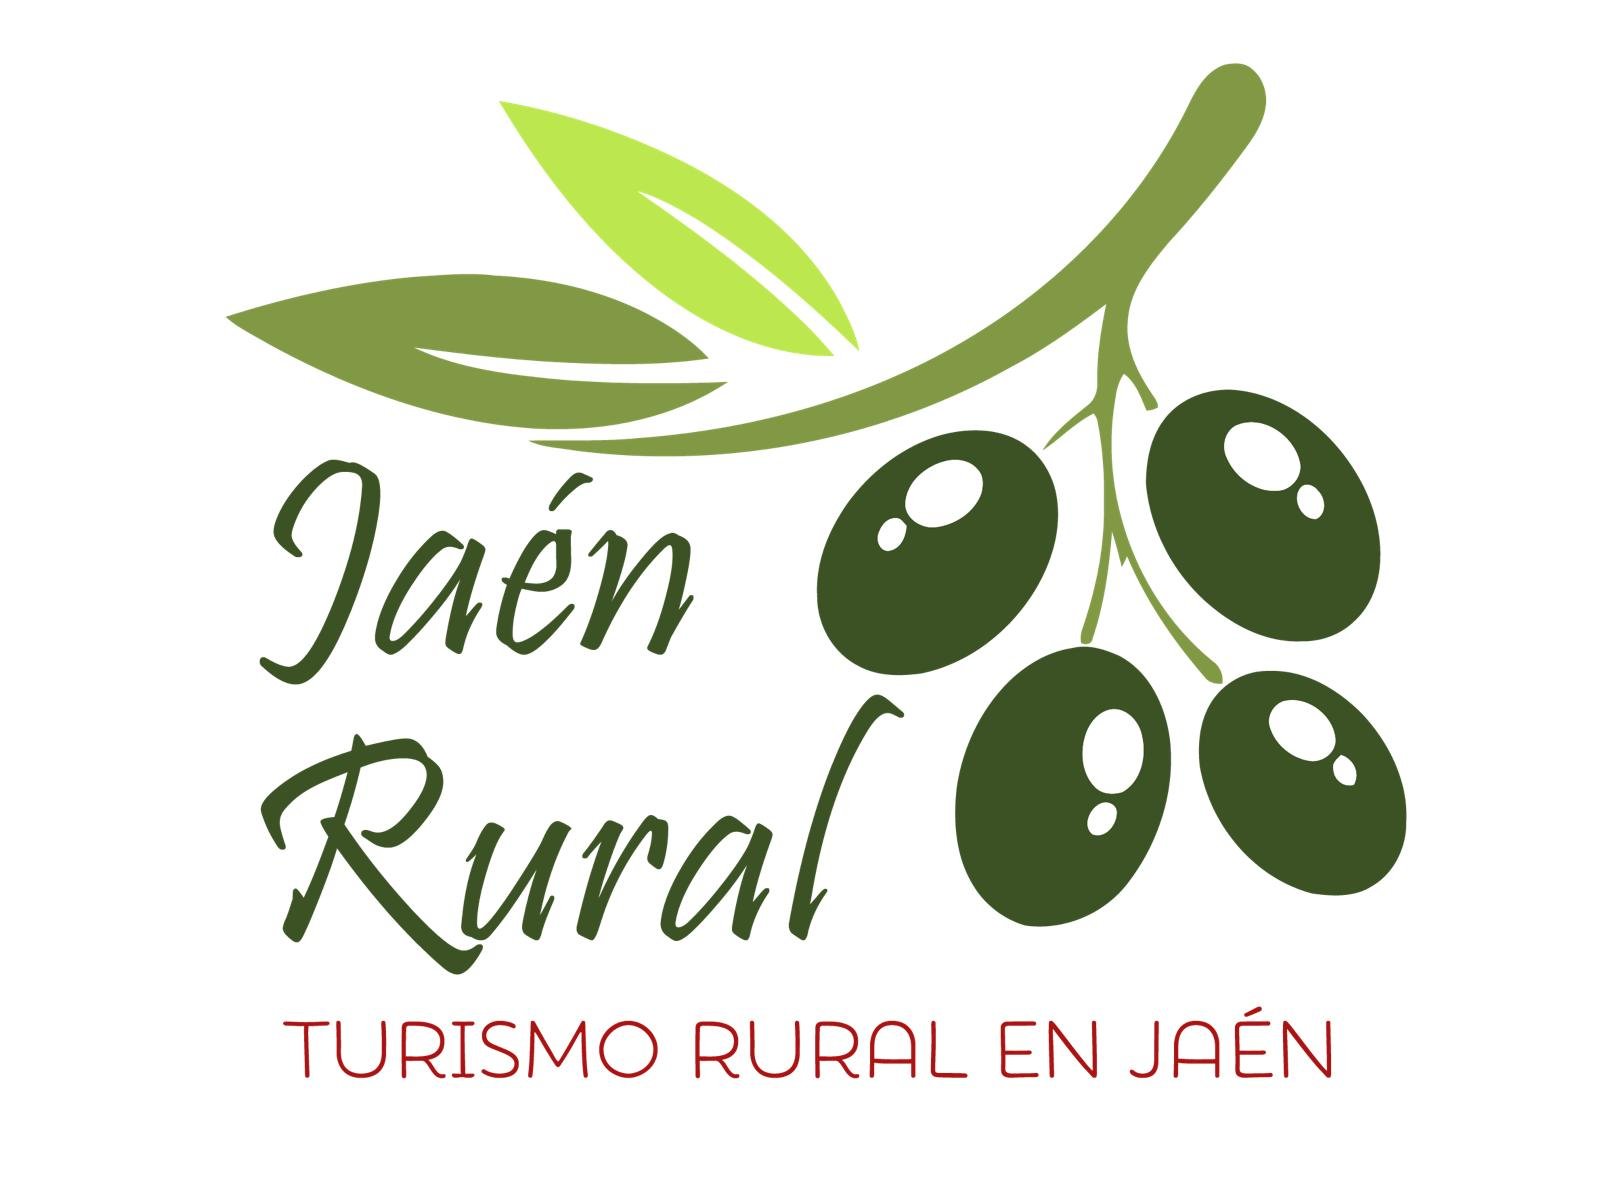 Jaen Rural es un portal de turismo con mas de 10 años de experiencia en el que podrán encontrar alojamientos turisticos en los Parques Naturales de Jaen.